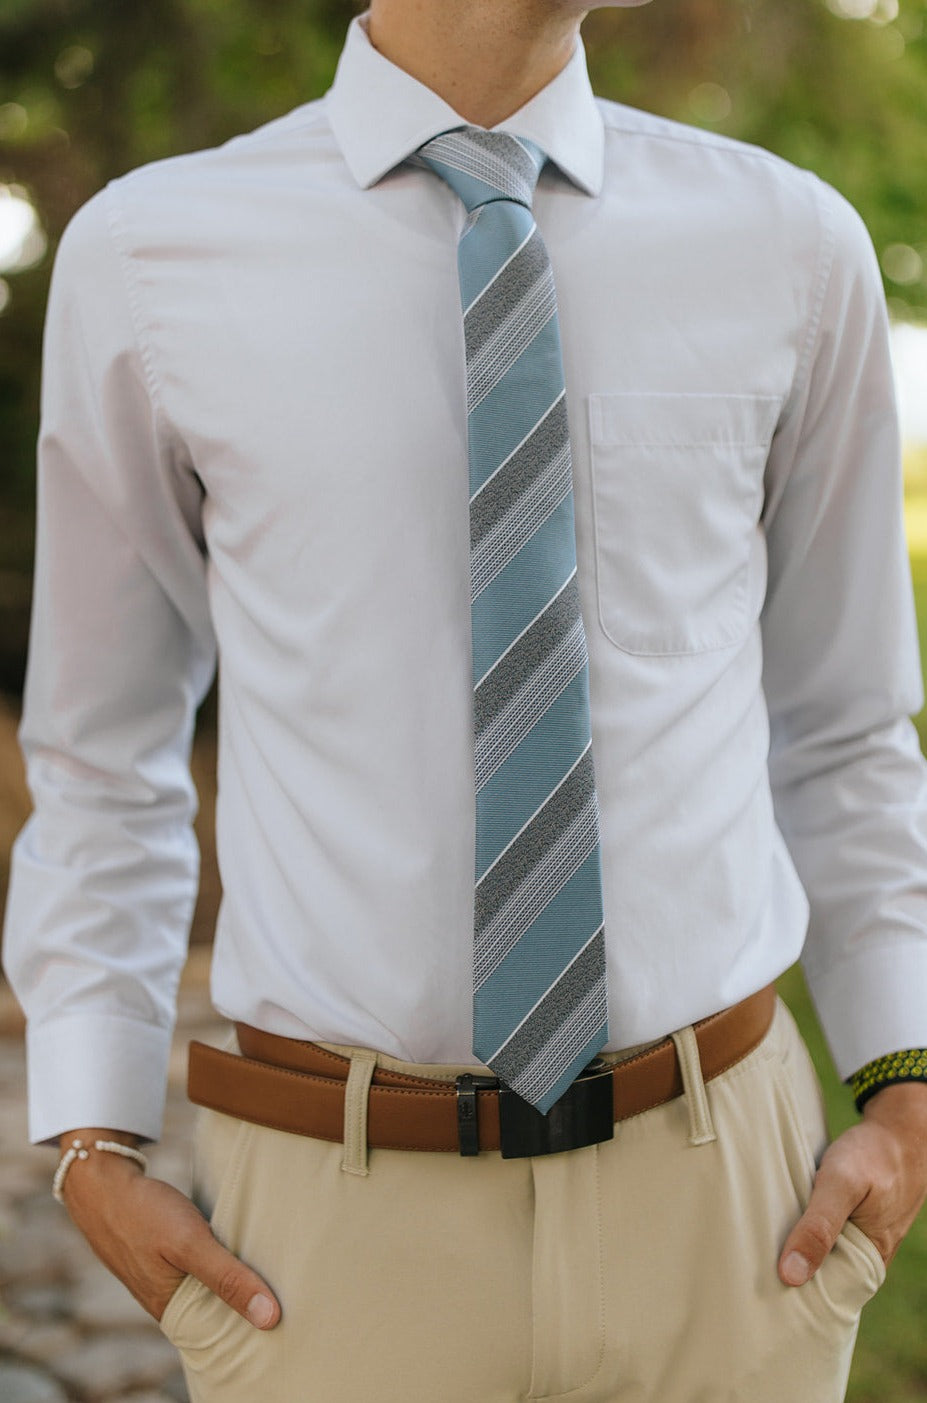 R&B Lt. Blue Tie w/ Texture Stripe